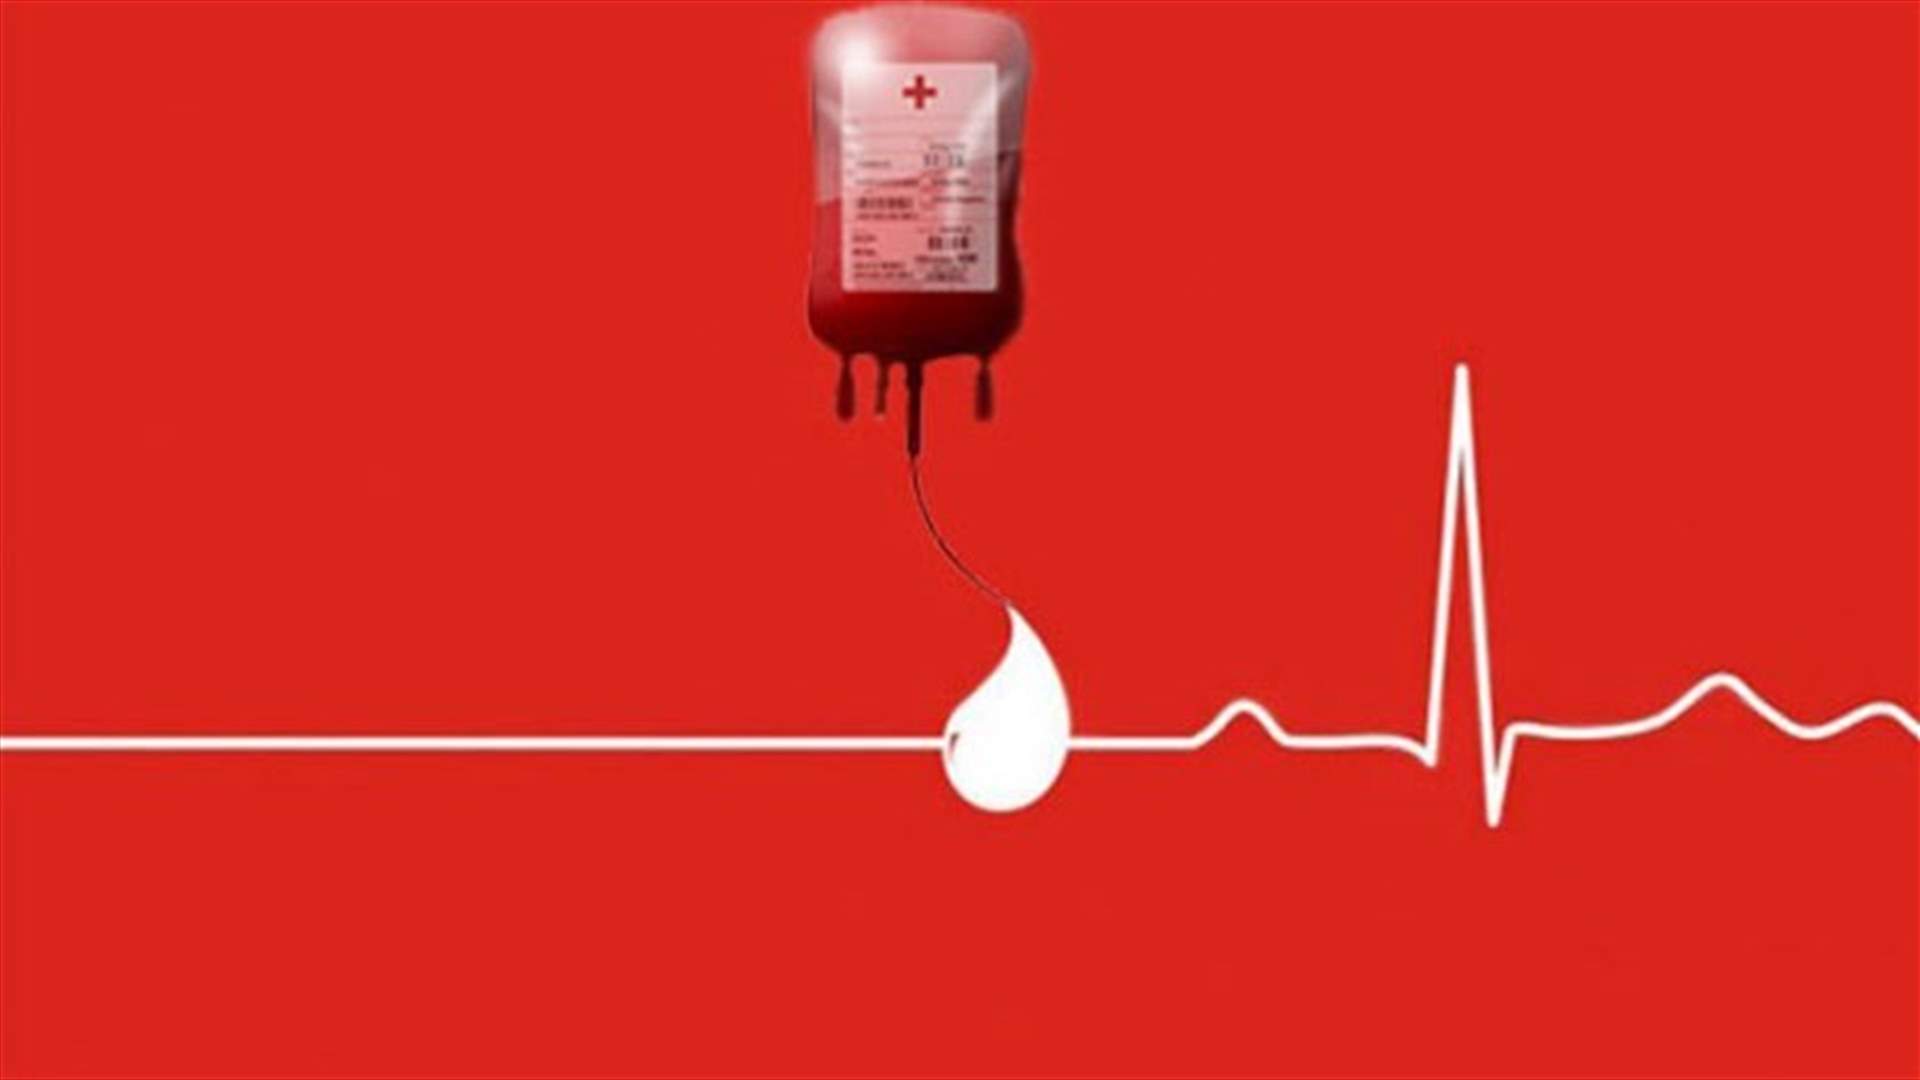 مريض في مستشفى الحايك بحاجة ماسة الى دم من فئة B+ للتبرع الاتصال على : 03/502323